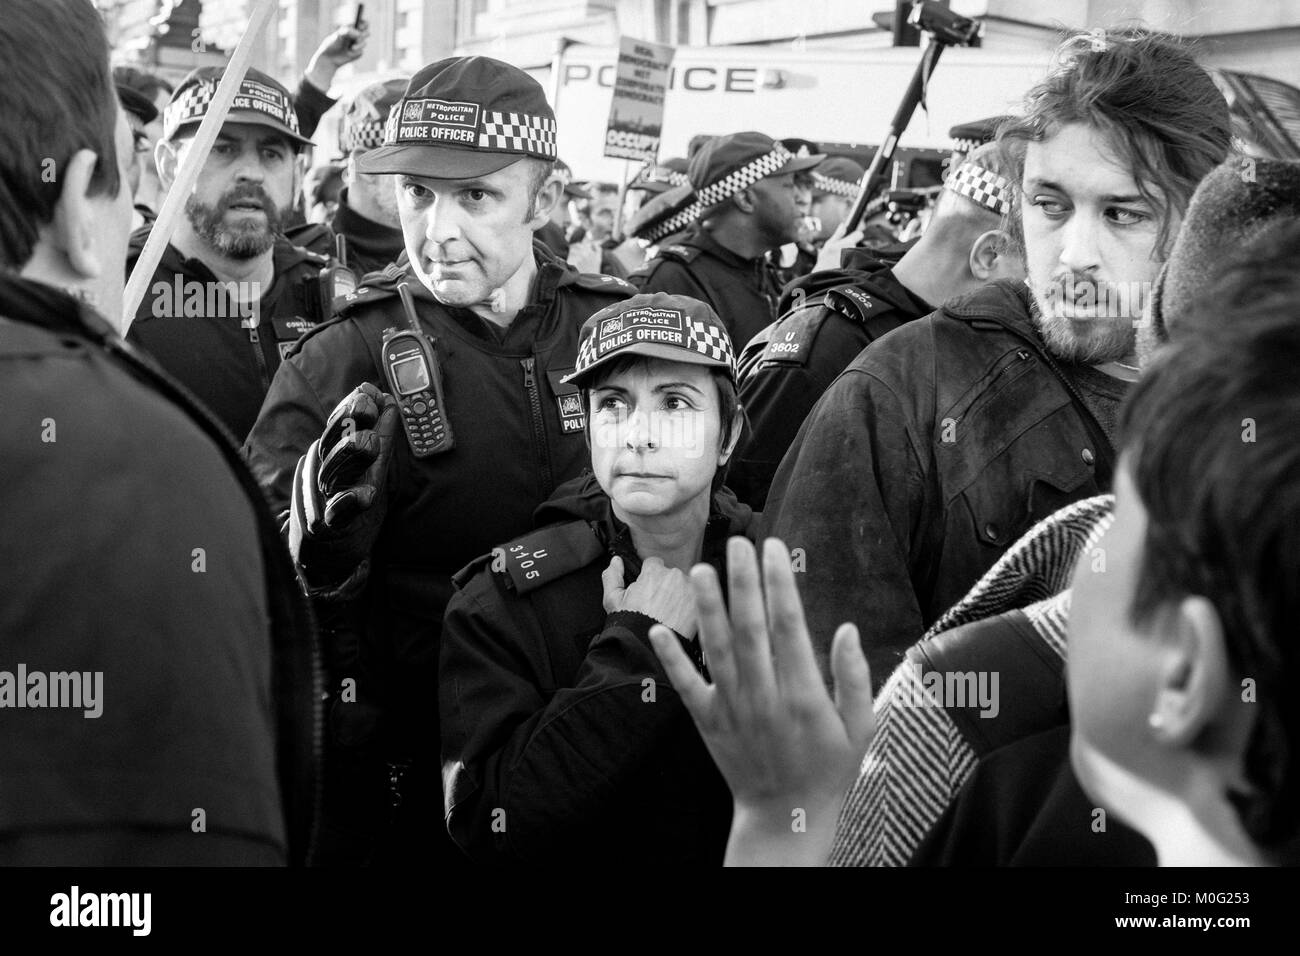 Schwarz-Weiß-Straßenfotografie in London: Metropolitan Police Officers konfrontieren Demonstranten während des protestmarsches im Zentrum Londons. Stockfoto